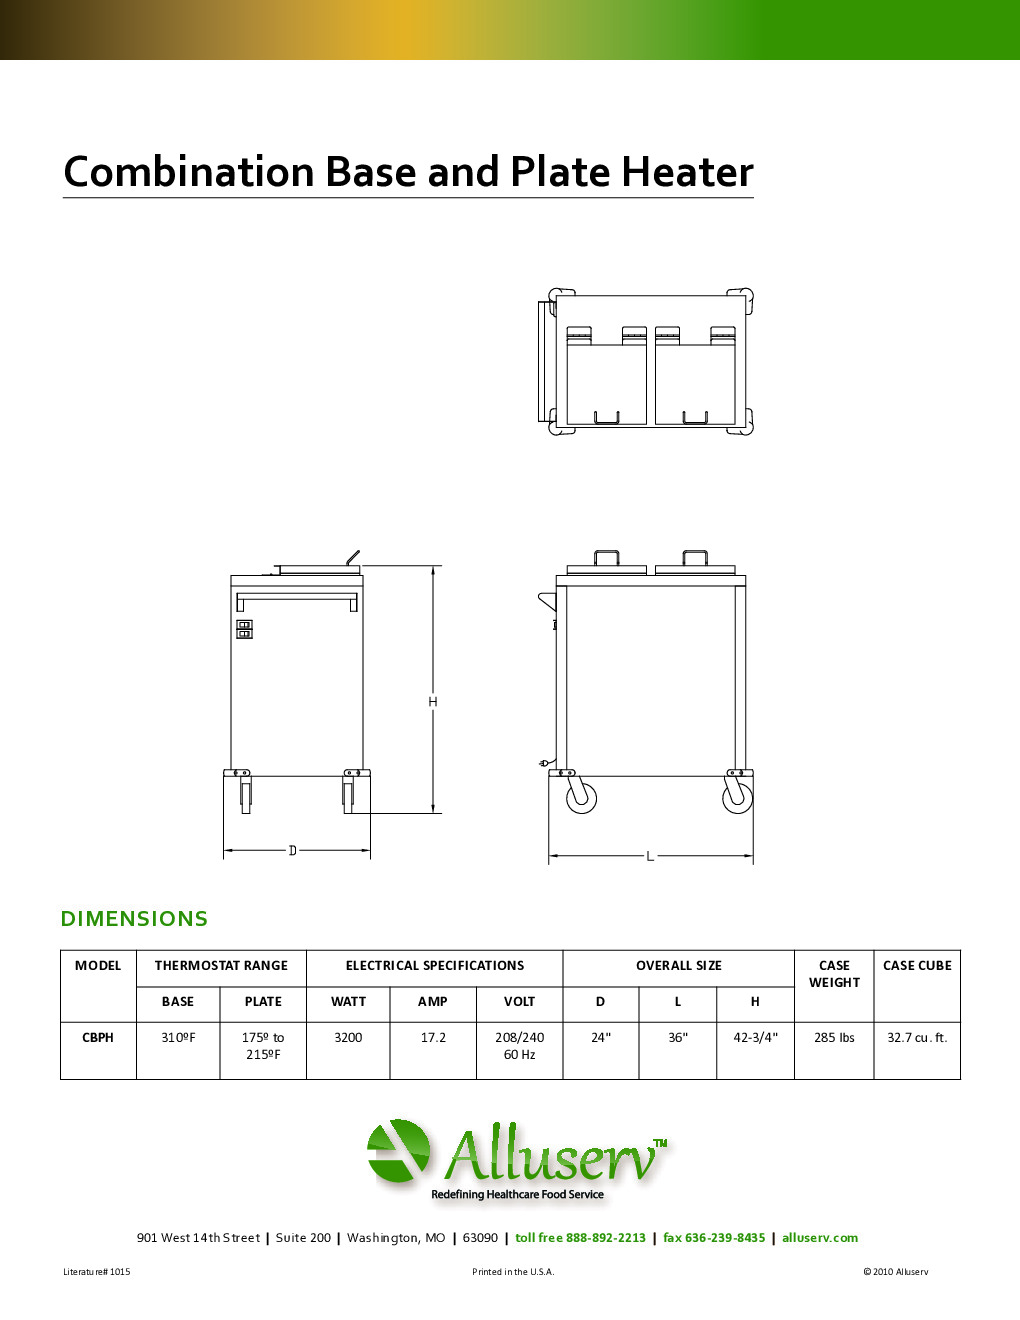 Alluserv CBPH Thermal Pellet Base / Underliner Dispenser